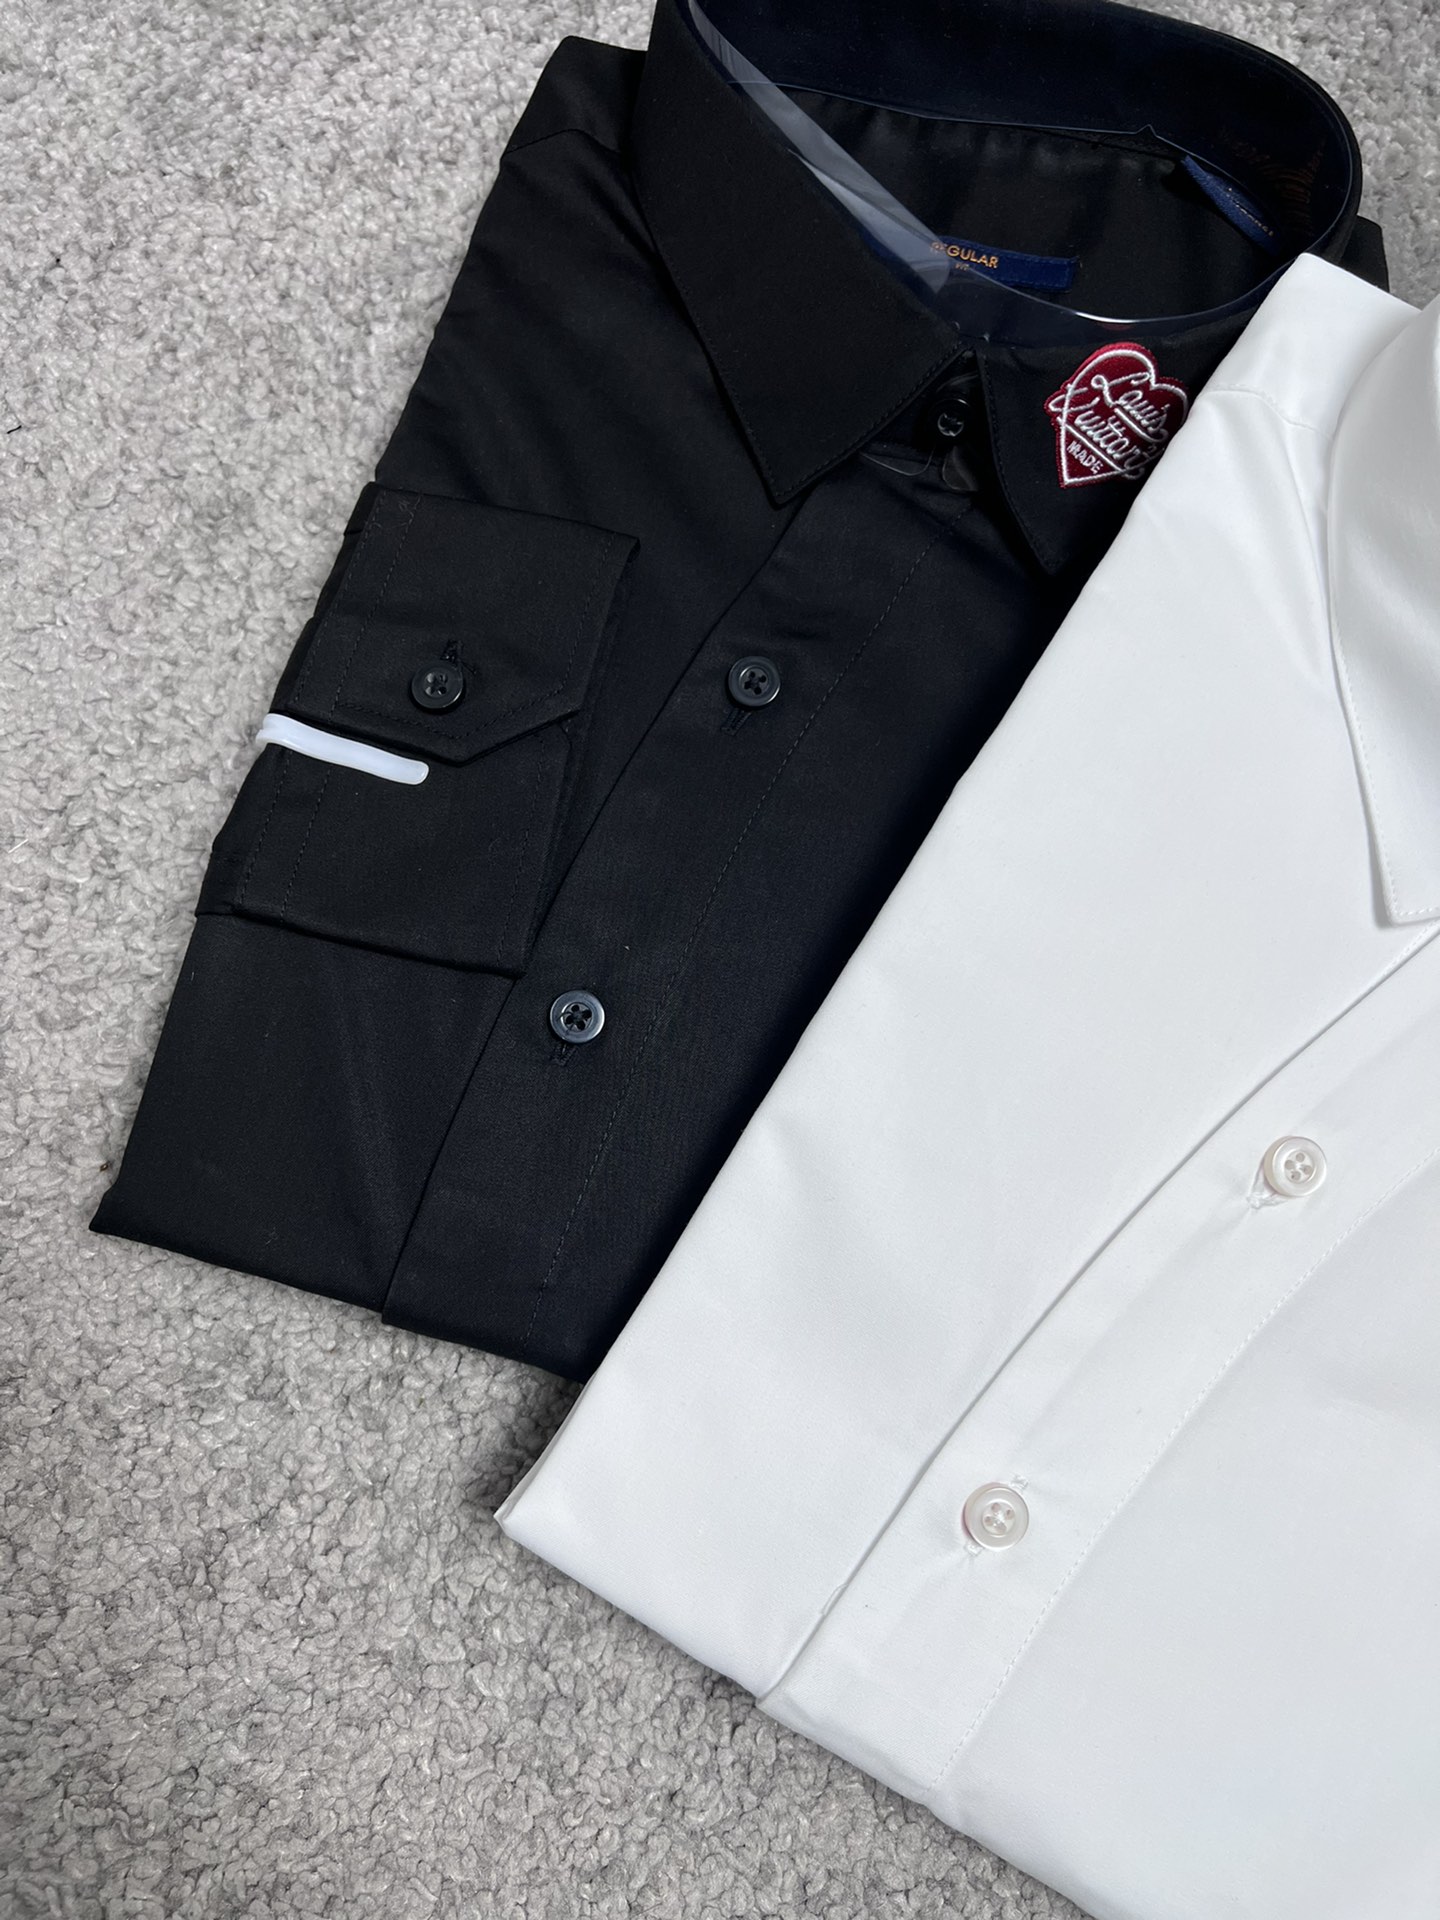 Lv驴家24SS春夏新款衬衫高端品质最新设计风格白贝壳扣领口️设计时尚百搭黑白码数SMLXLXXL